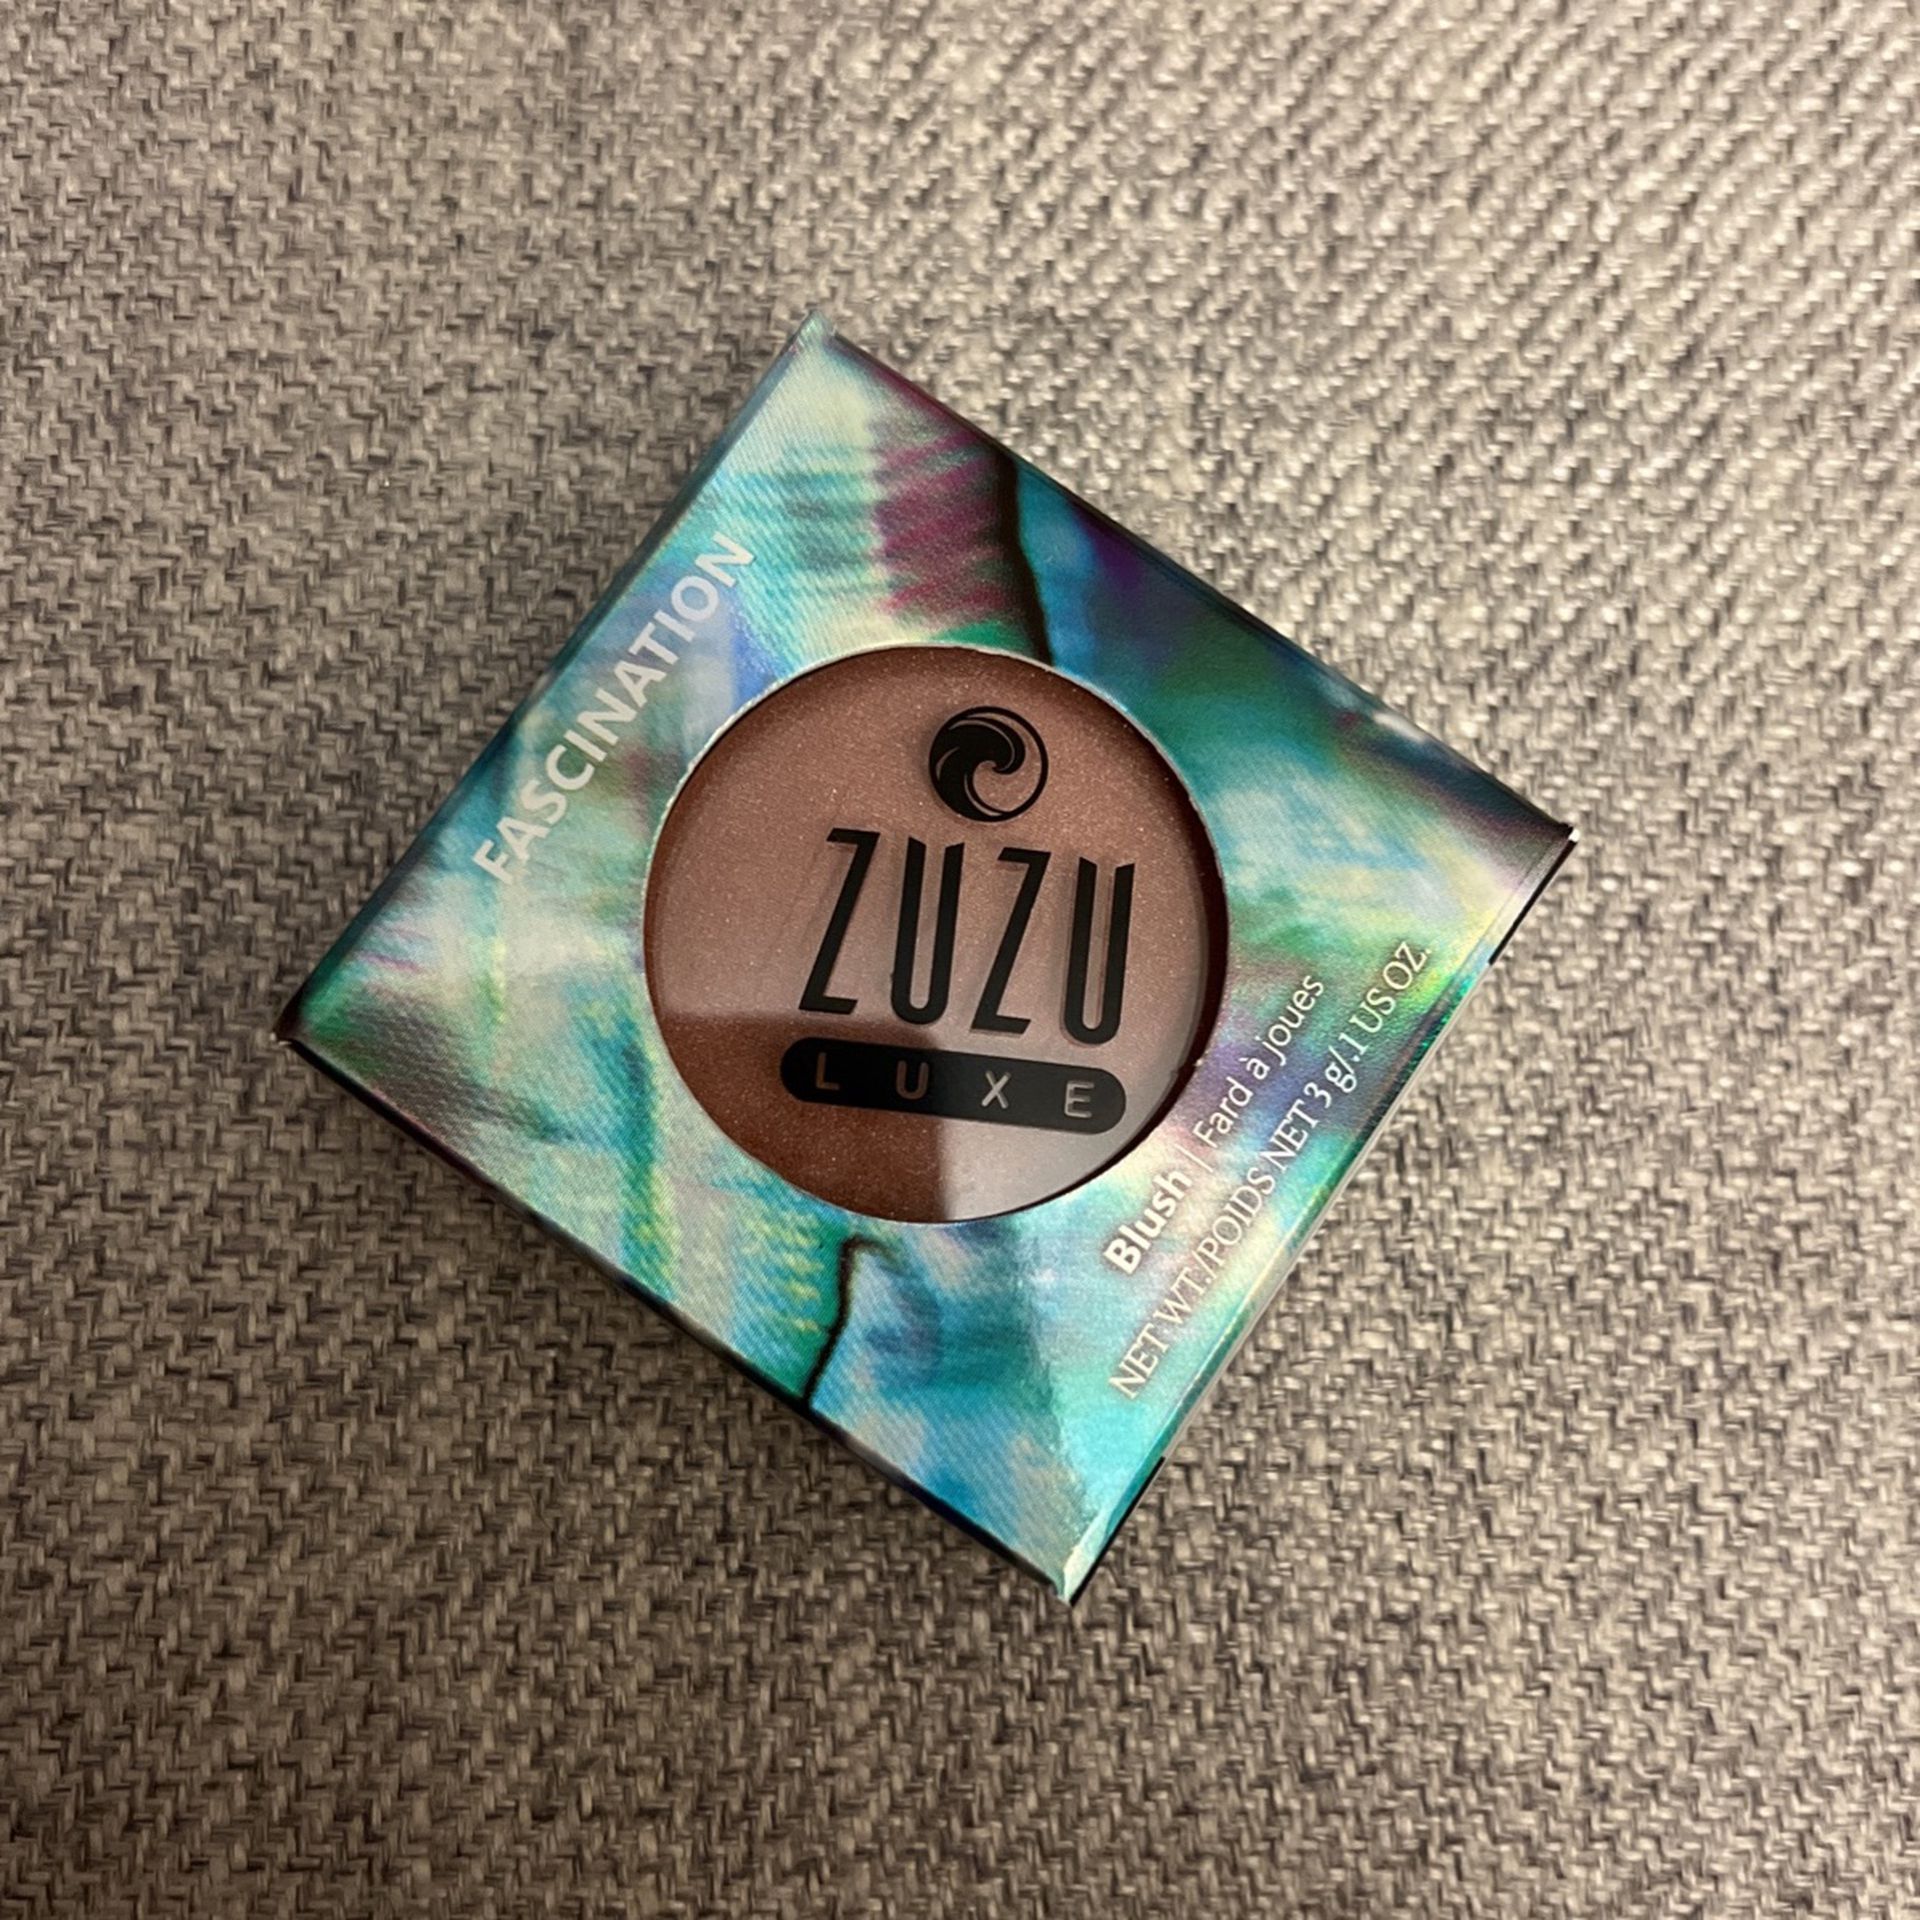 Zuzu Luxe Eye Liner And Glitter Blush 